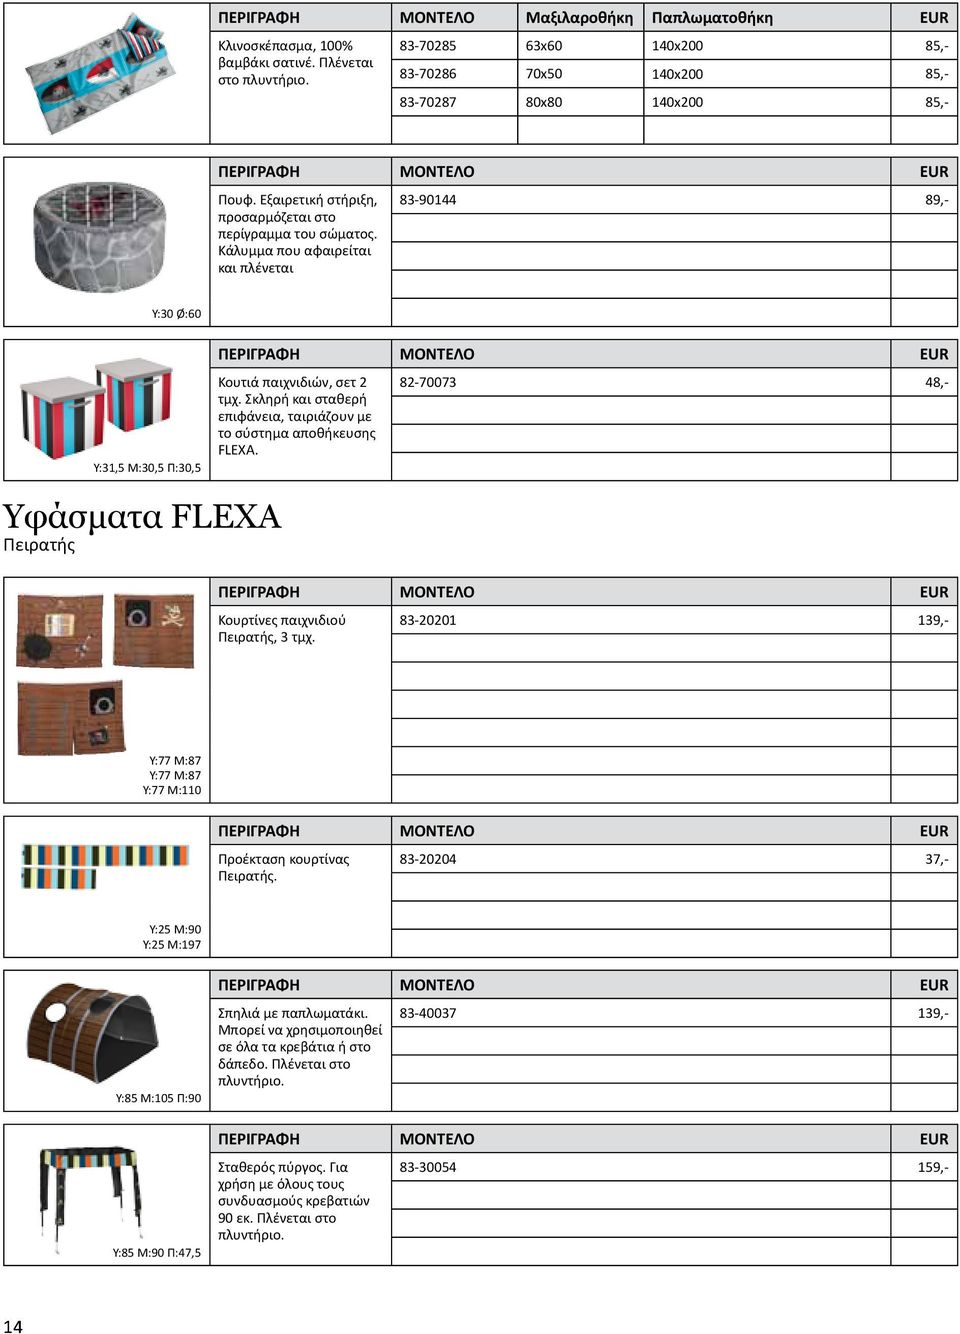 Σκληρή και σταθερή επιφάνεια, ταιριάζουν με το σύστημα αποθήκευσης FLEXA. 82-70073 48,- Υφάσματα FLEXA Πειρατής Κουρτίνες παιχνιδιού Πειρατής, 3 τμχ.